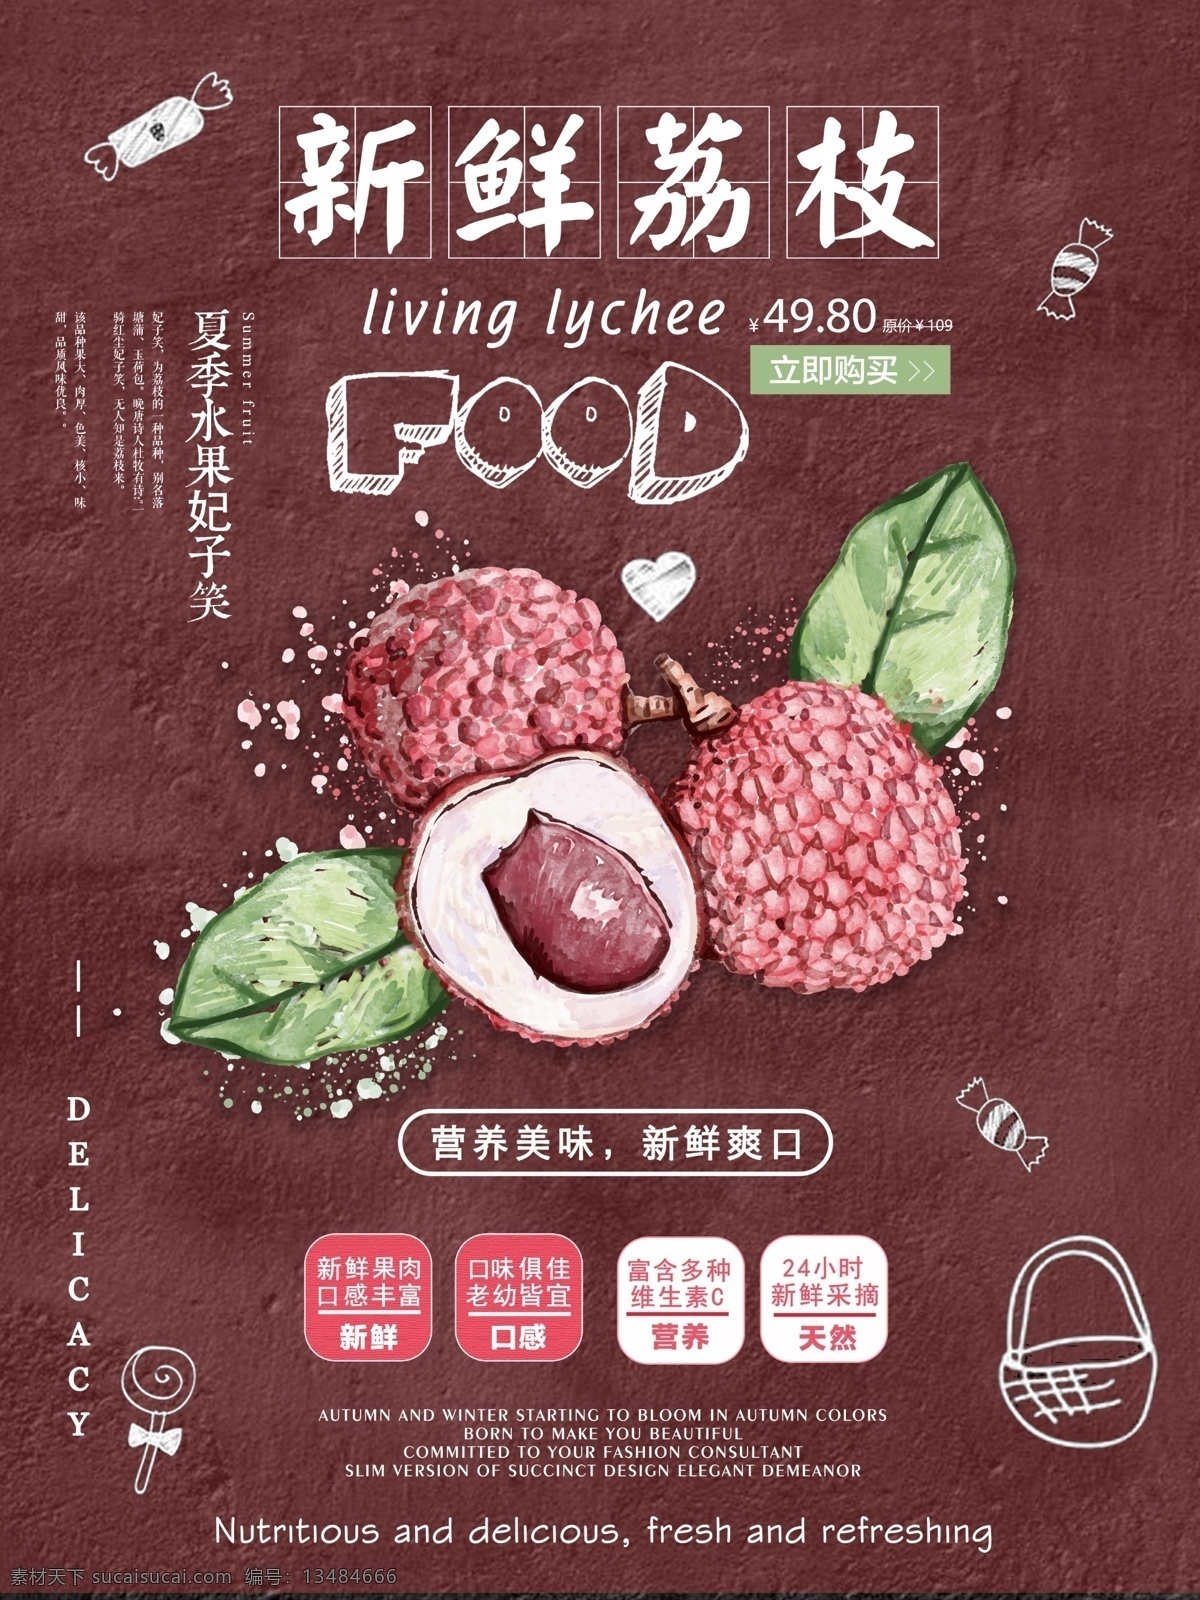 夏季 水果 手绘 新鲜 荔枝 促销 宣传单 海报 红色背景 粉笔字 妃子笑 美味